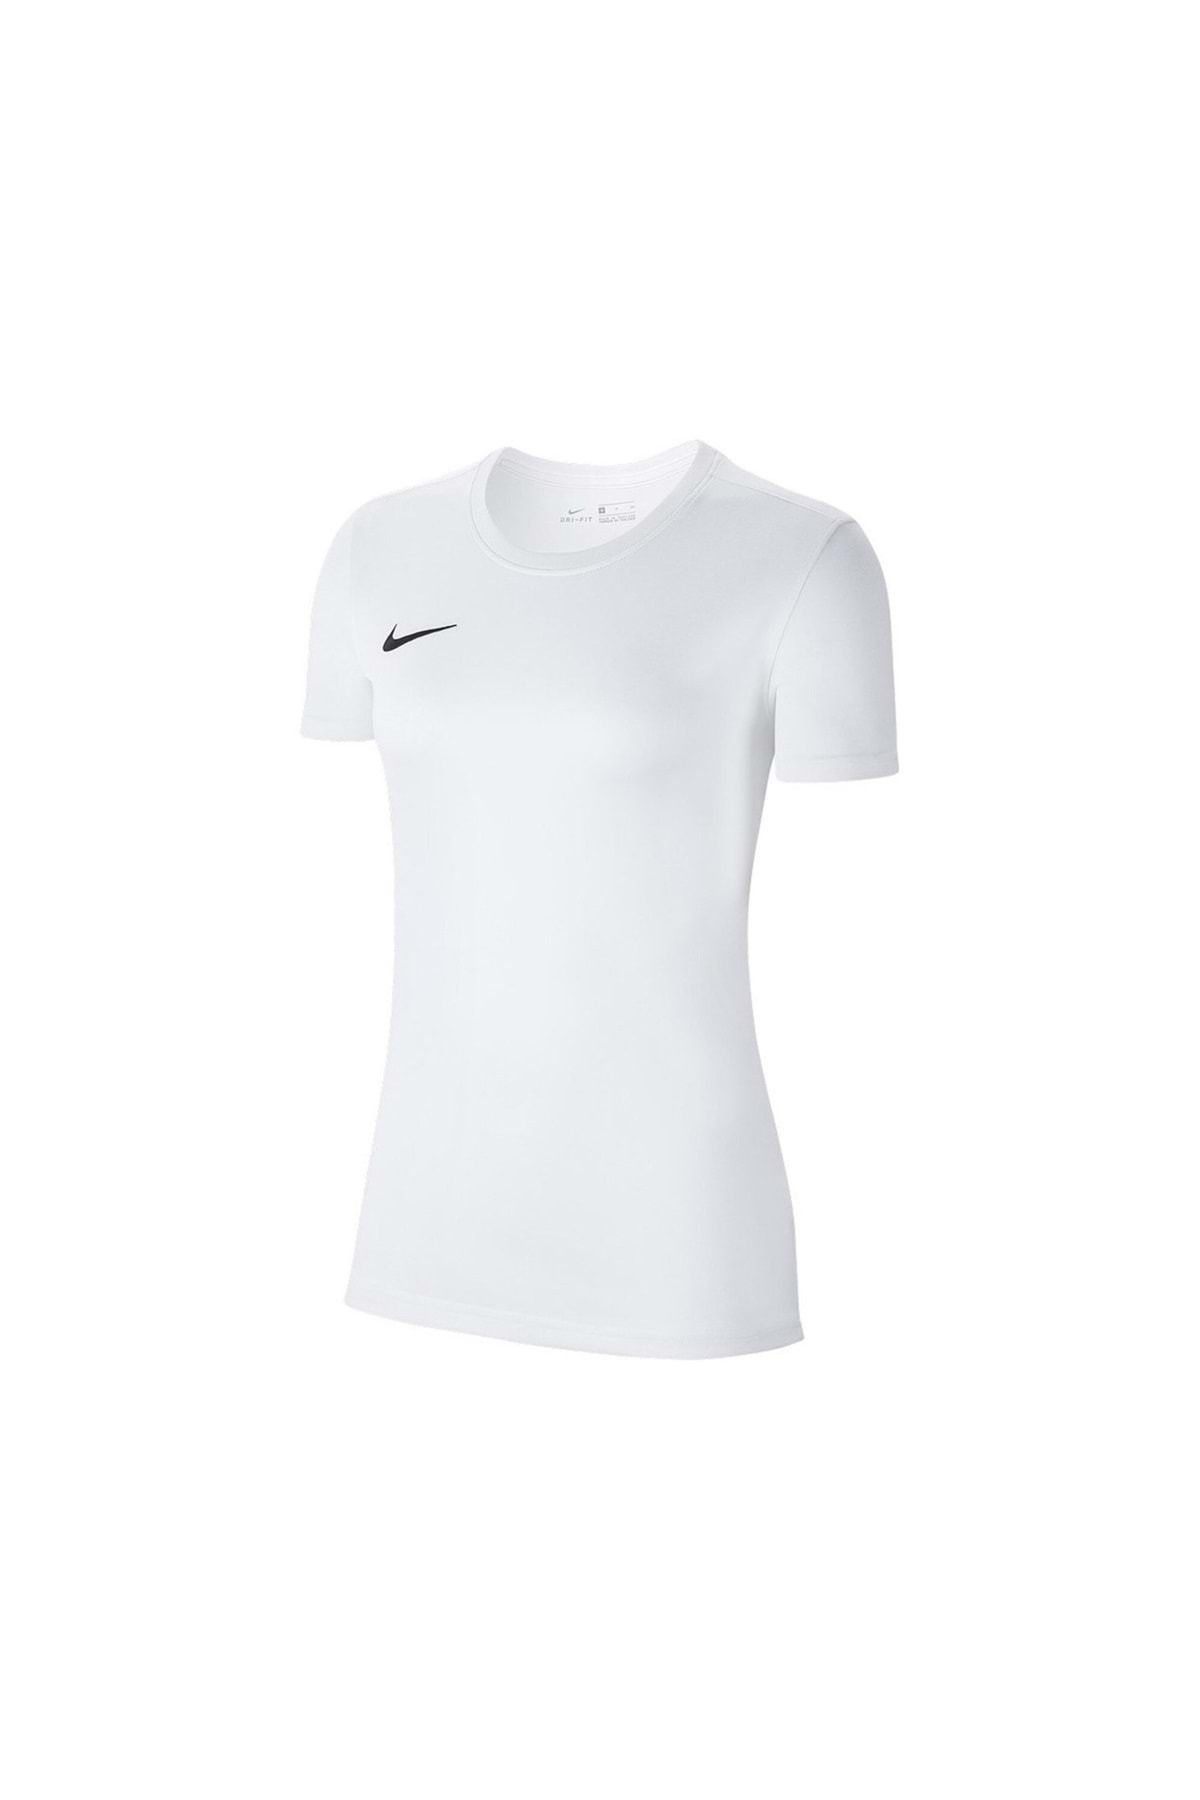 Nike W Dry Park Vıı Jsy Ss Bv6728 Kadın Tişört Beyaz